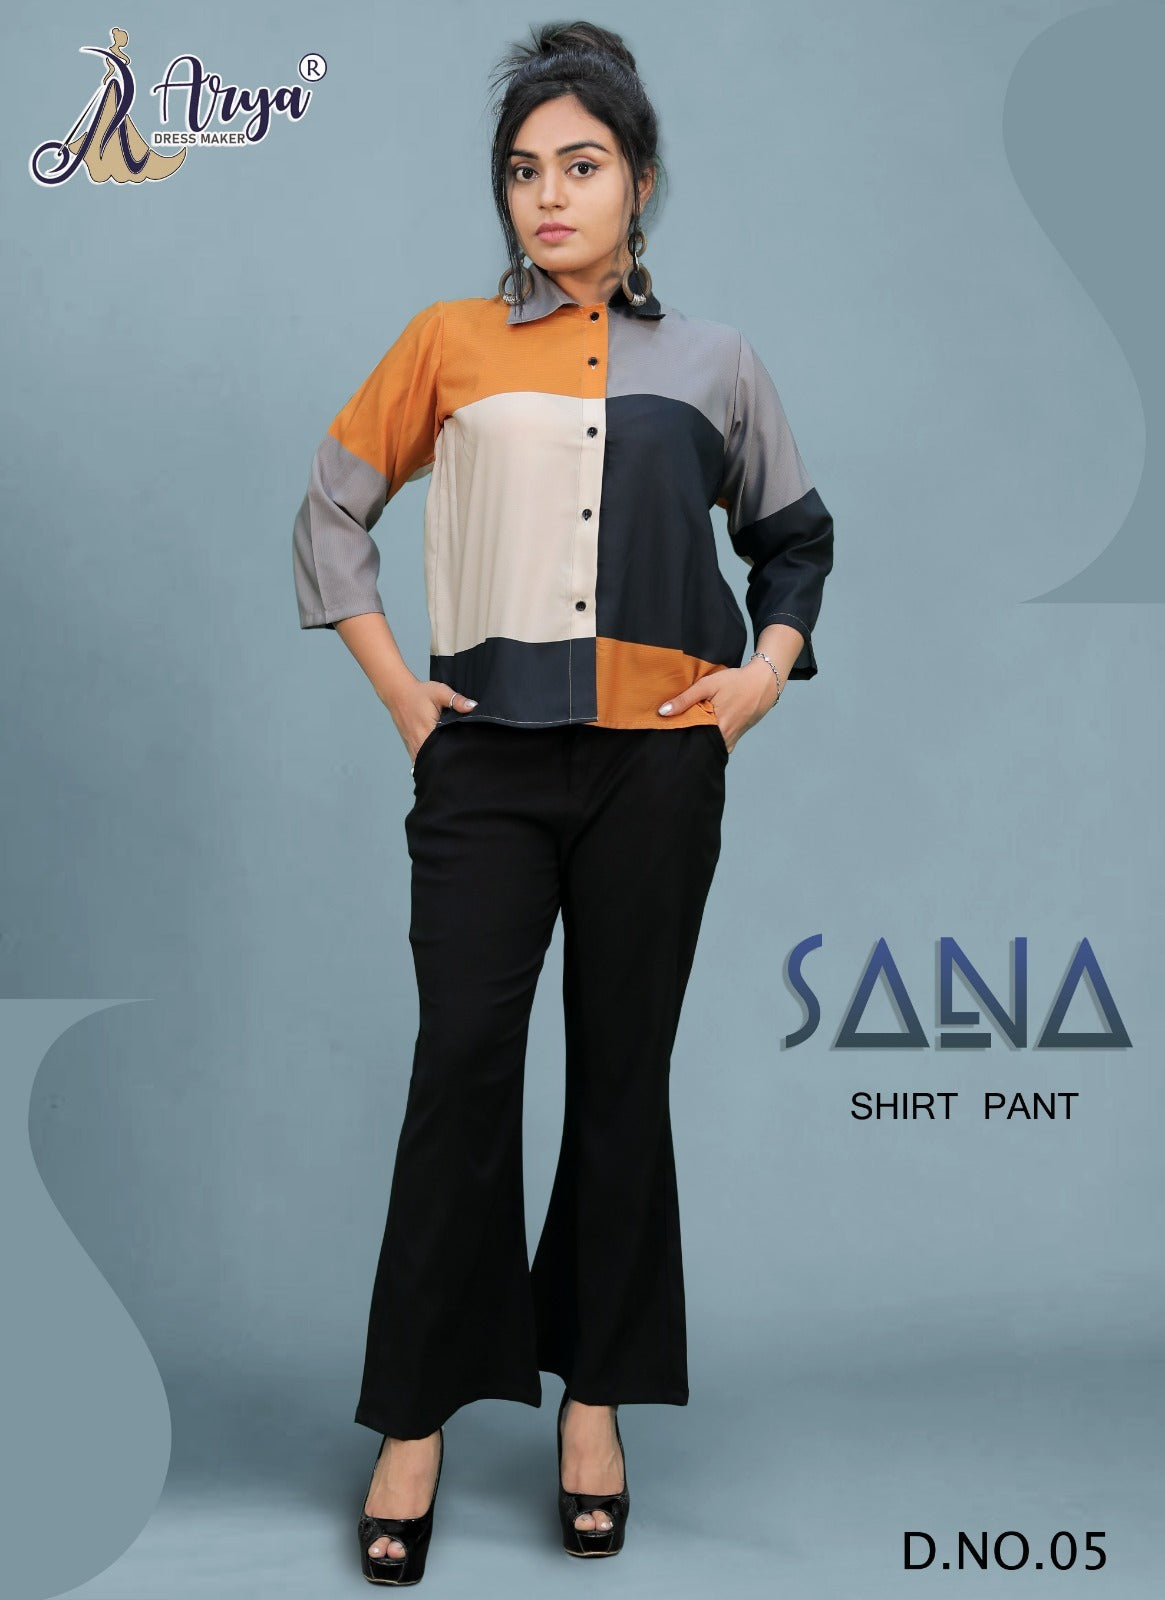 SANA SHIRT PANT